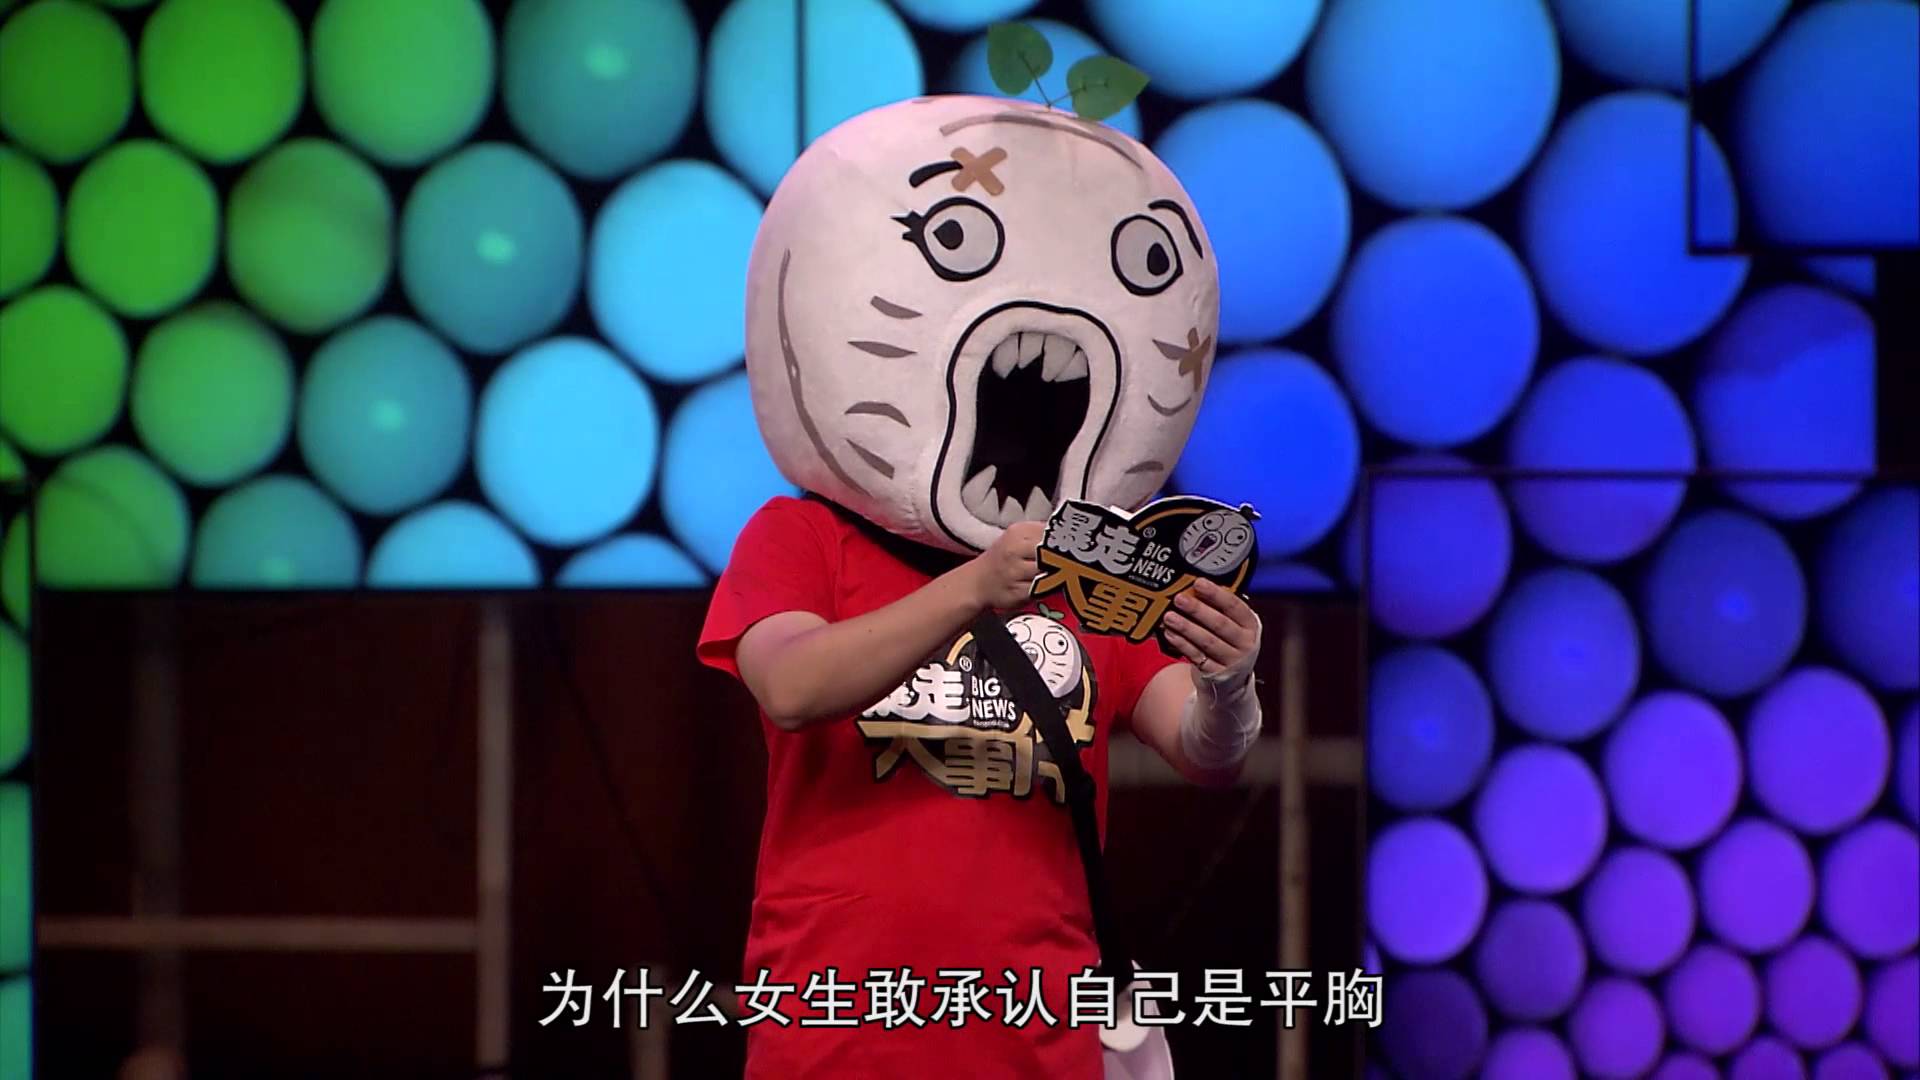 Trung Quốc đóng cửa website ảnh hài vì chế nhạo anh hùng